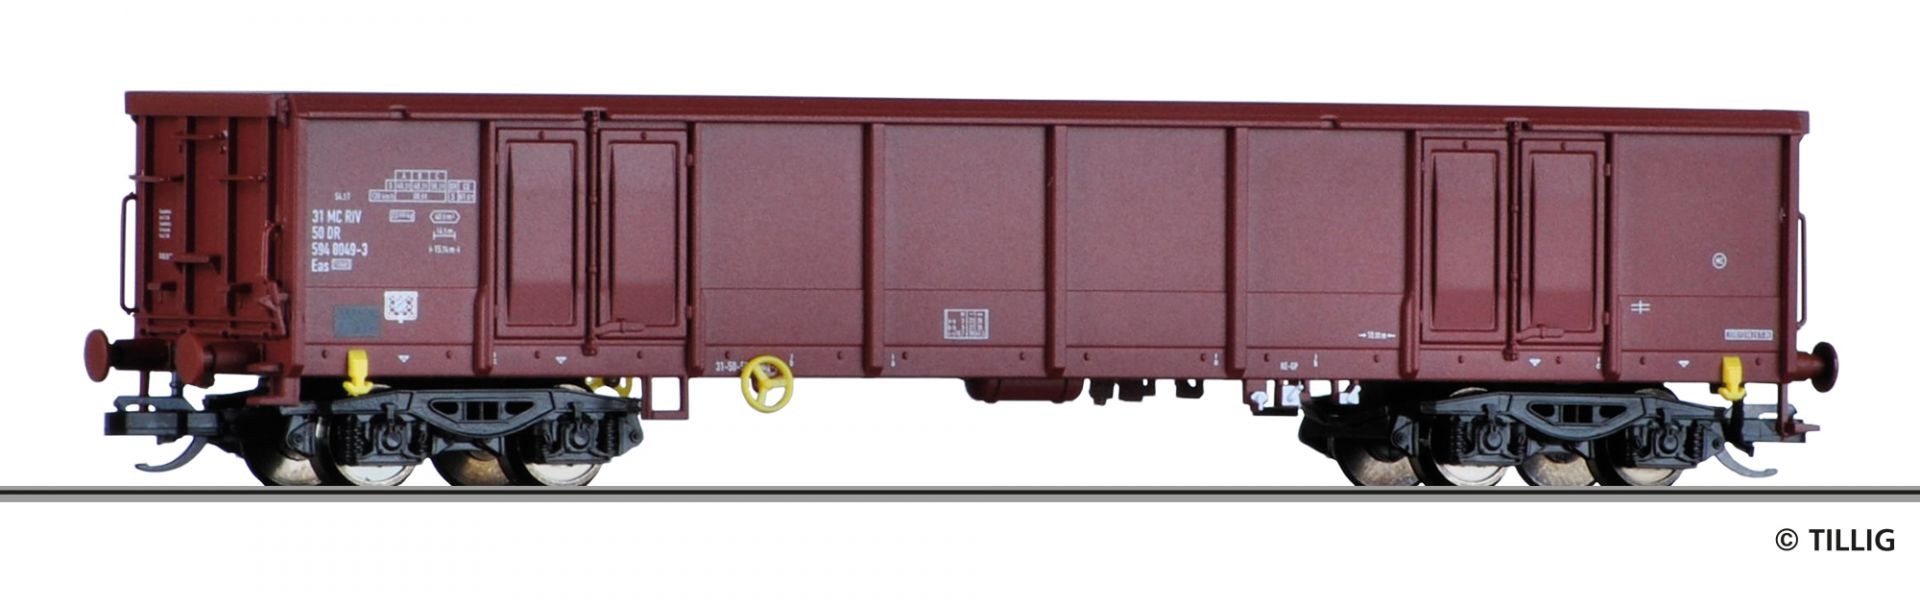 15686 | Offener Güterwagen DR -werksseitig ausverkauft-